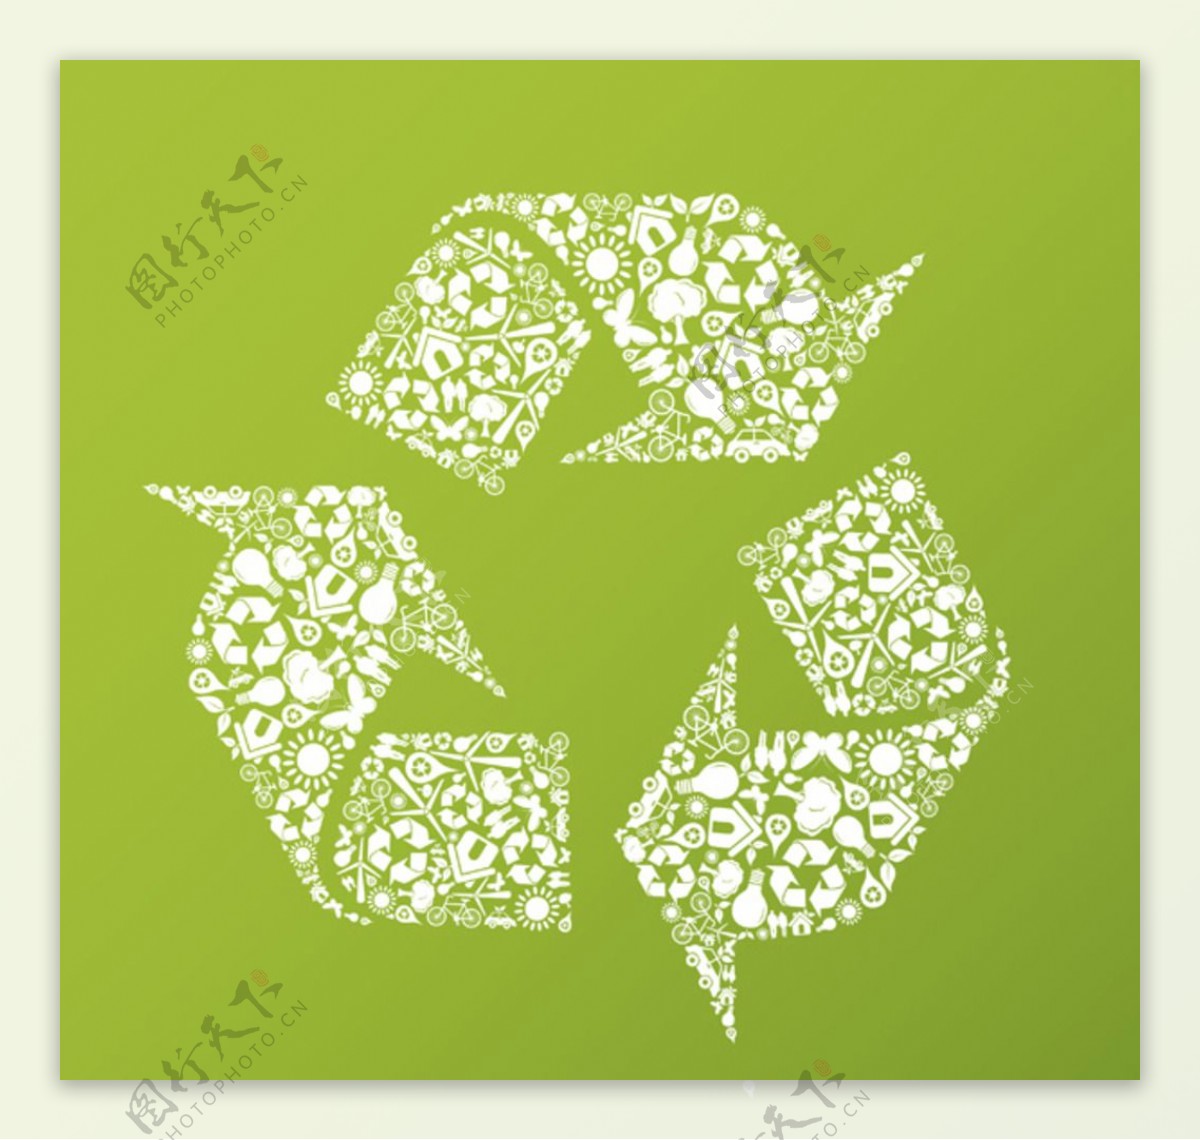 绿色环保回收再利用图标